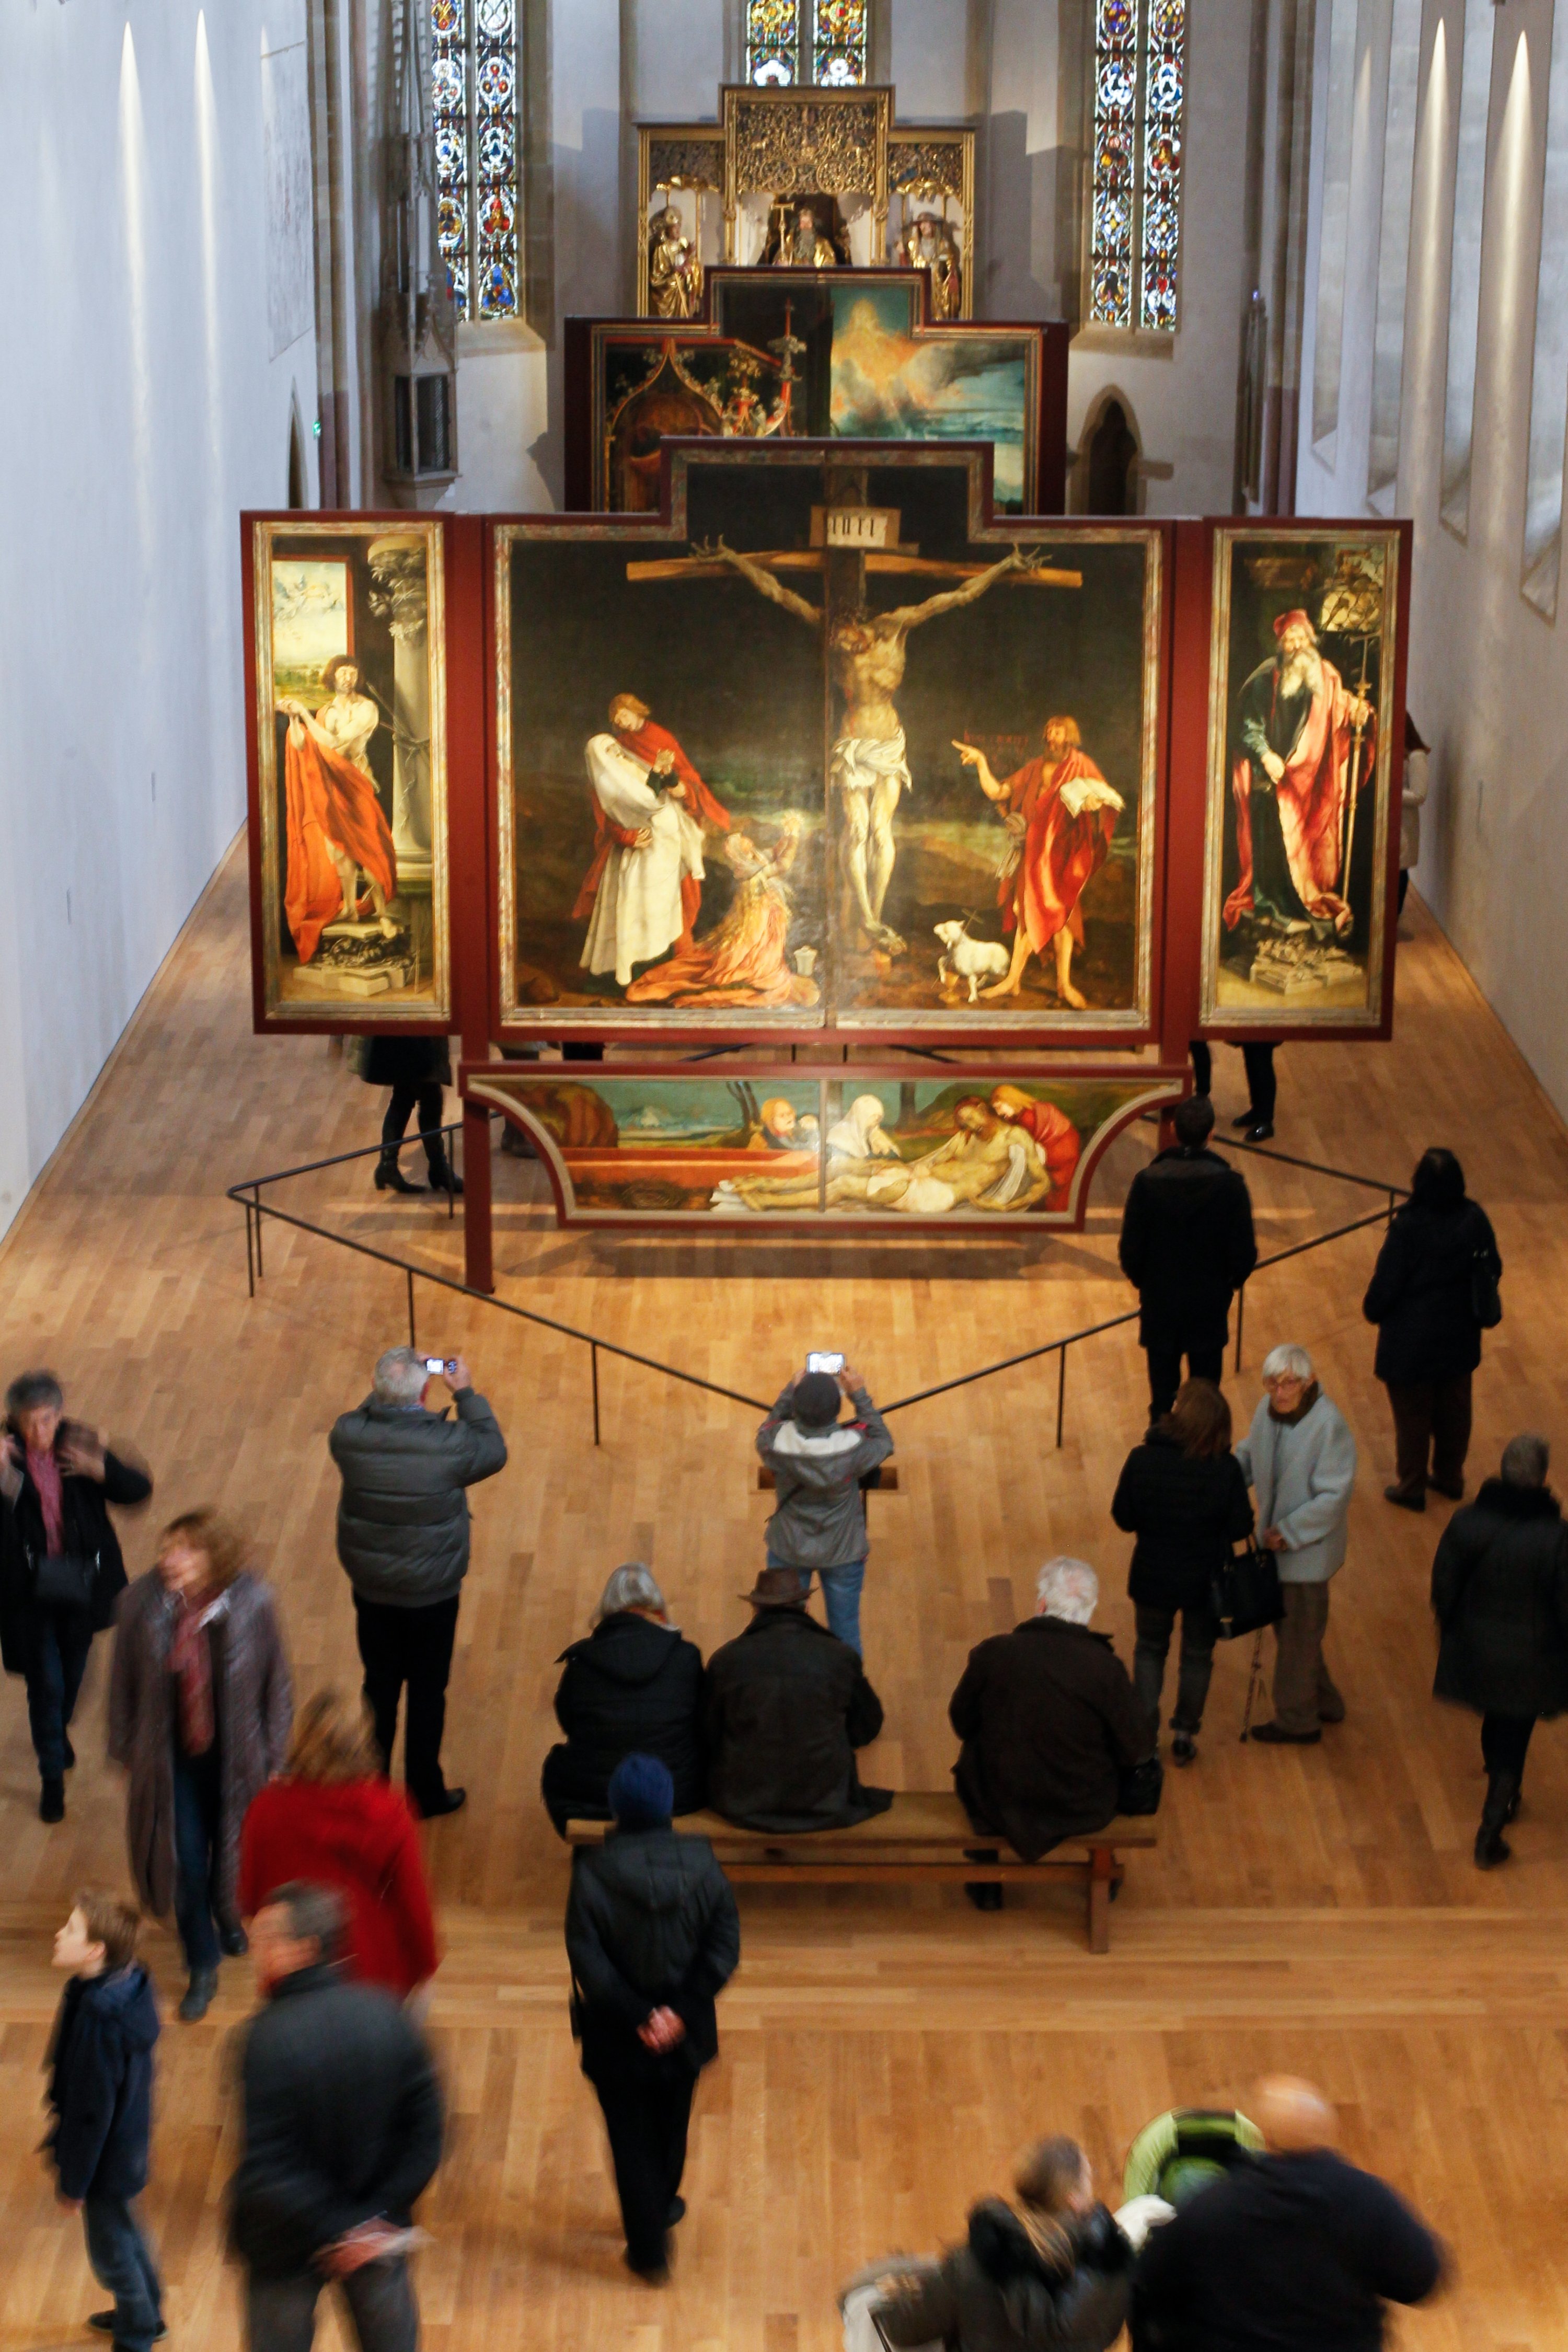 Altar Isenheim di Colmar, salah satu karya terpenting dalam sejarah seni sakral, telah menjalani pekerjaan restorasi yang luar biasa ekstensif selama beberapa tahun, Colmar, Prancis, 25 Oktober 2019. (Foto dpa)